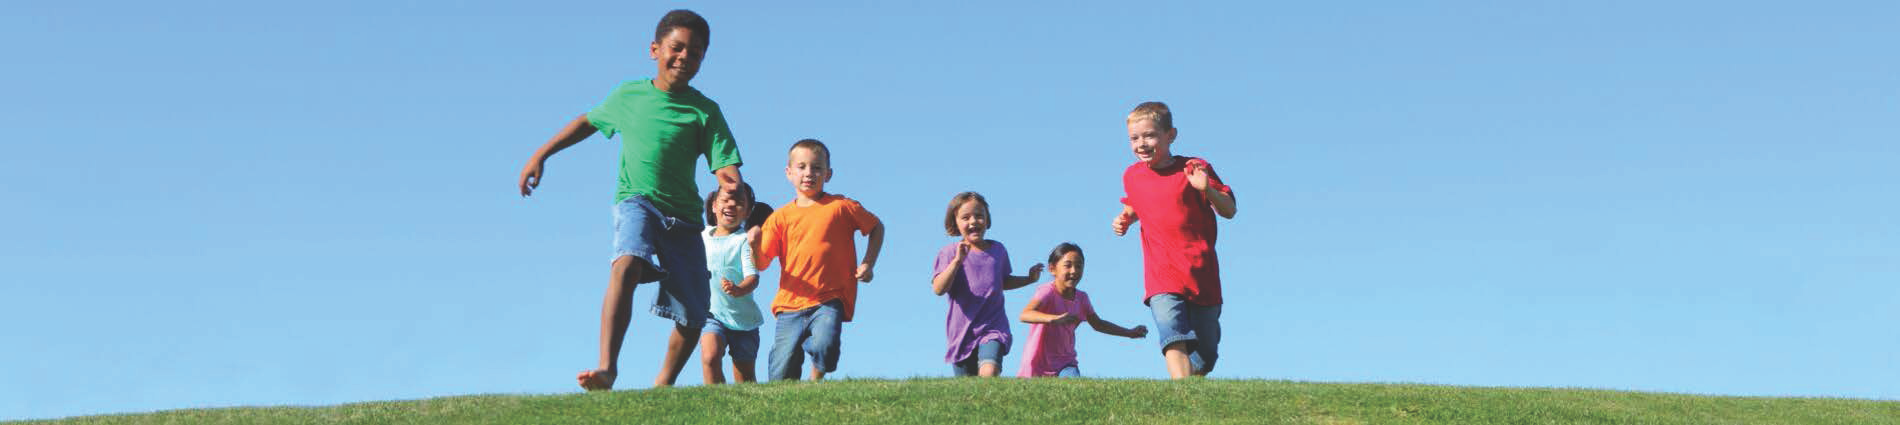 Kids running outside